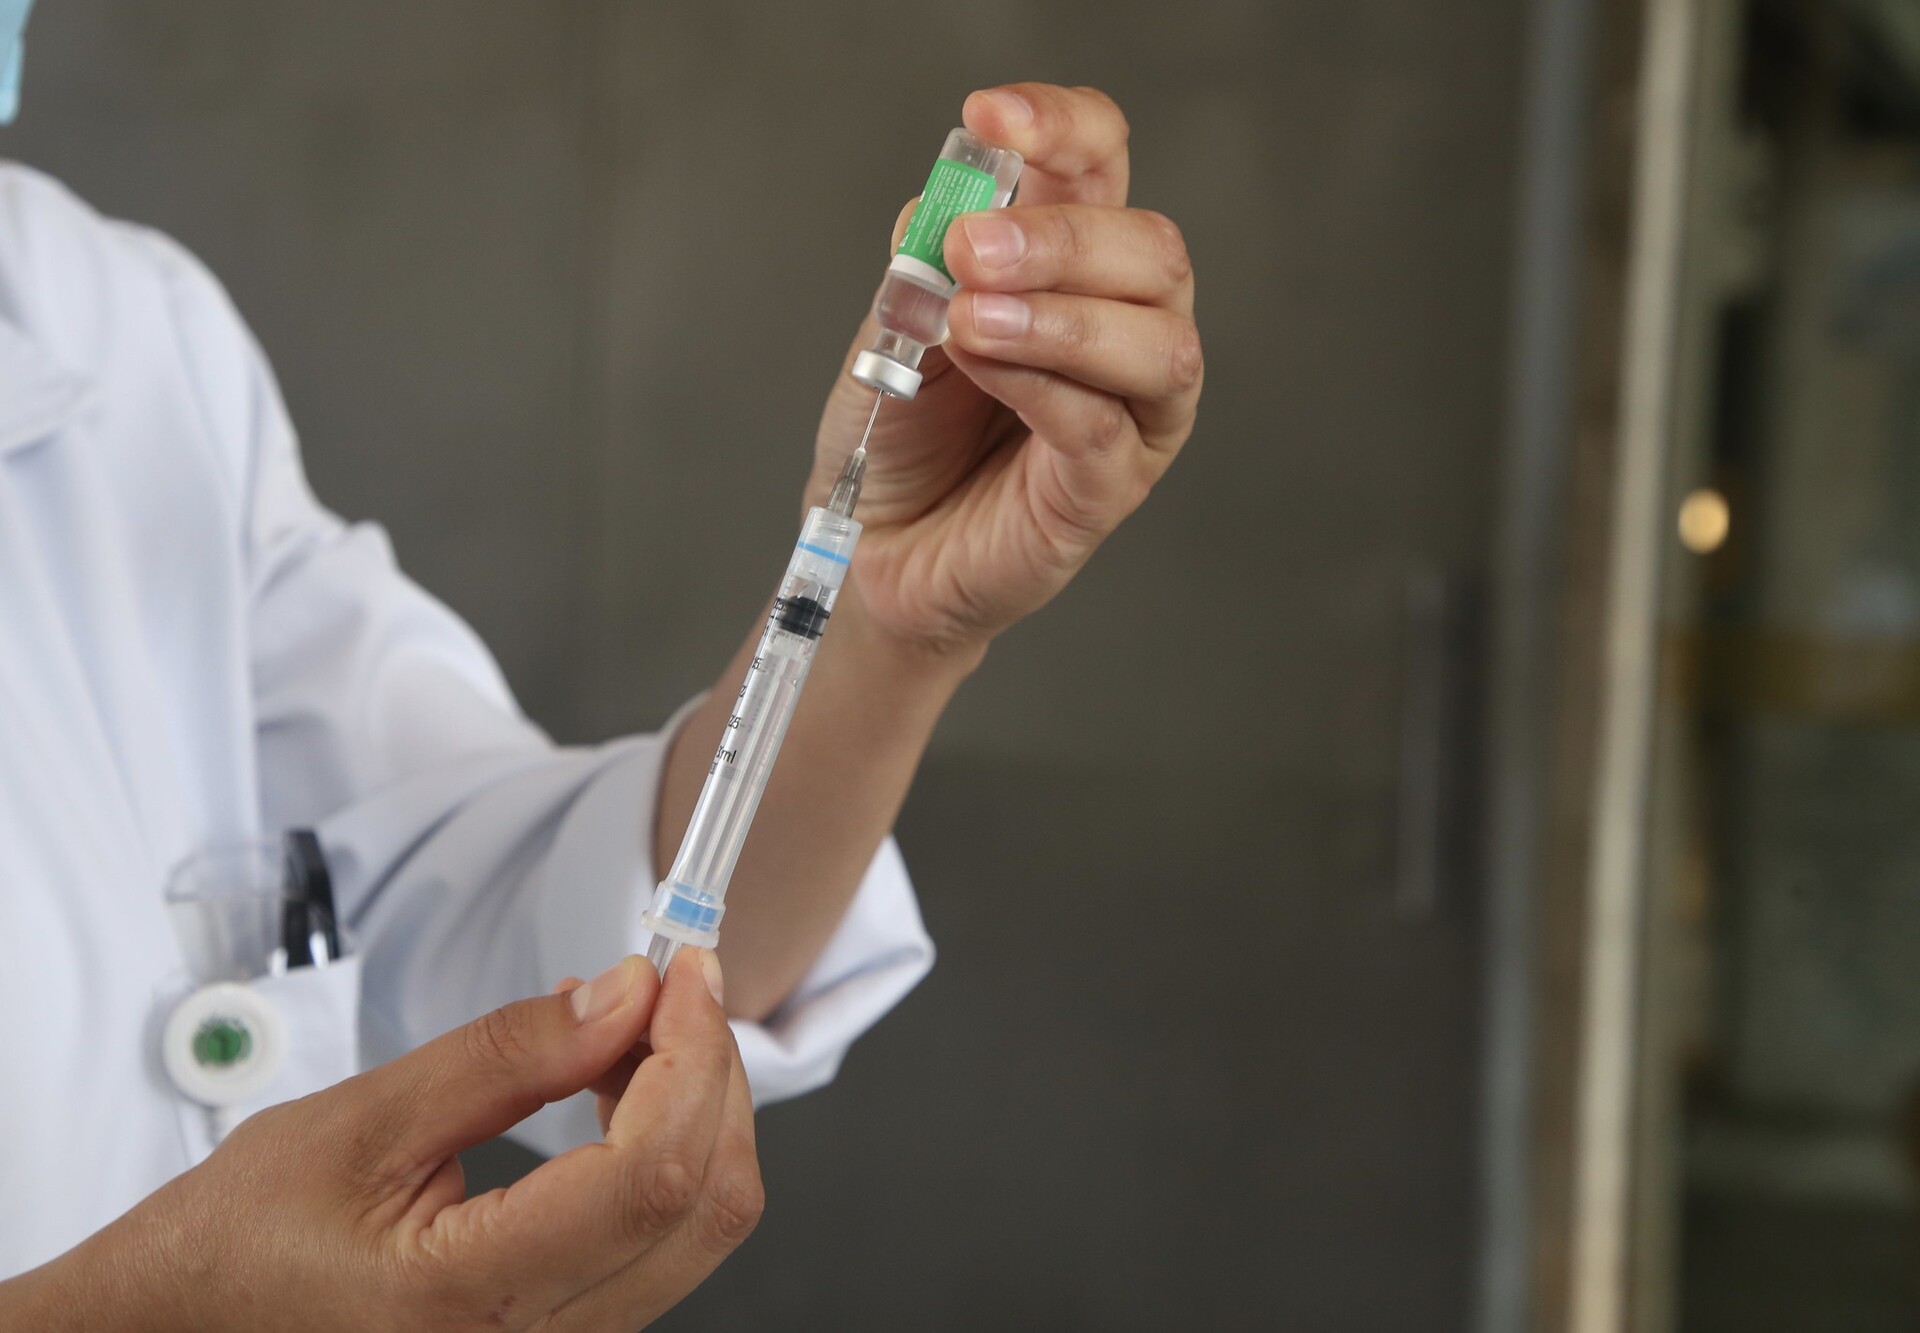 Juntas, as duas vacinas –CoronaVac e AstraZeneca– correspondem a 79,5% dos imunizantes aplicados no Brasil